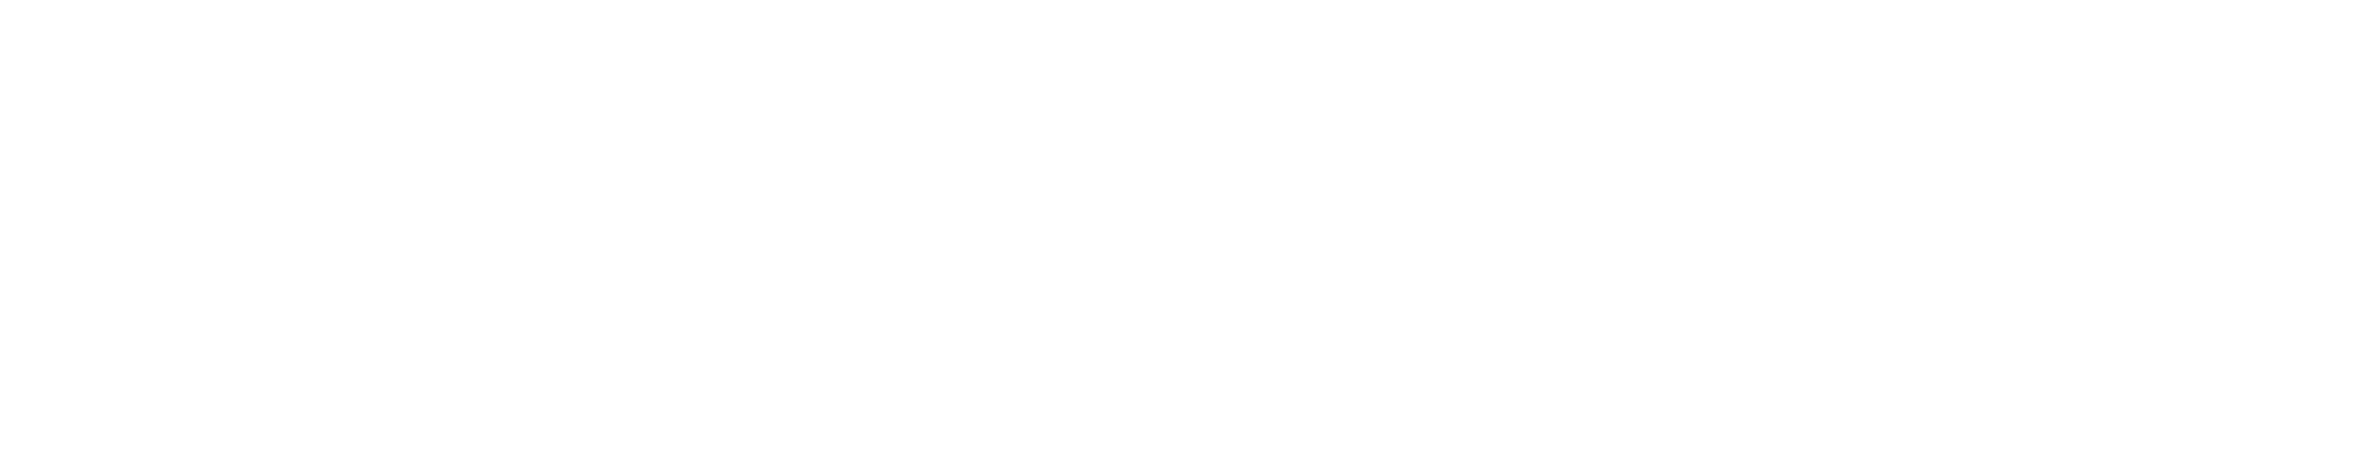 kempersports logo